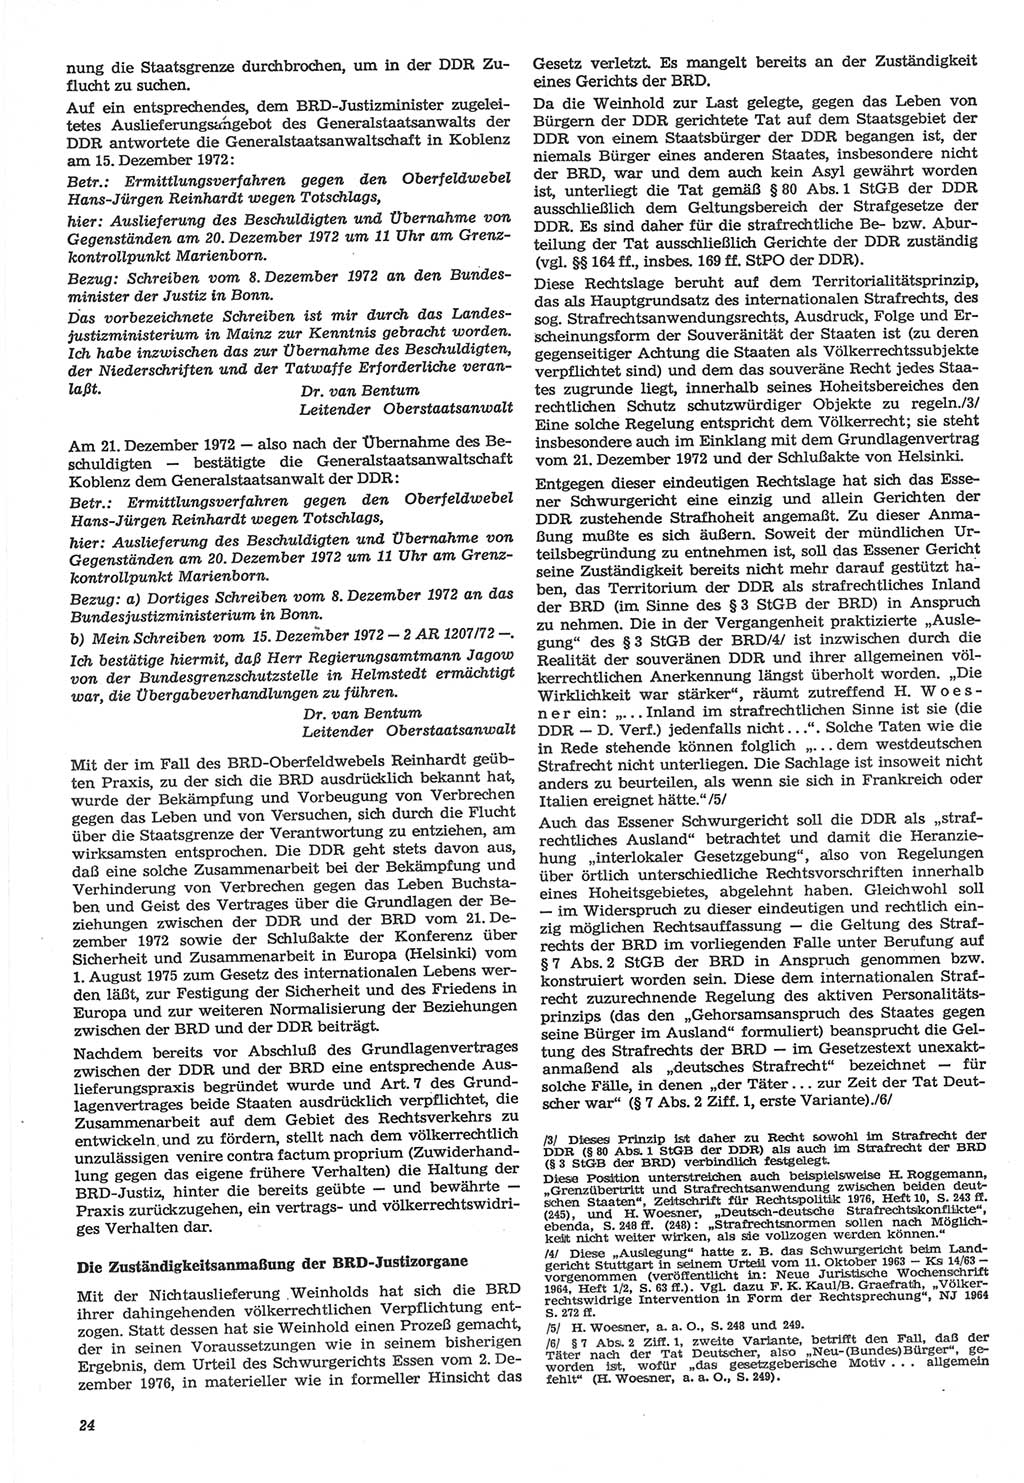 Neue Justiz (NJ), Zeitschrift für Recht und Rechtswissenschaft-Zeitschrift, sozialistisches Recht und Gesetzlichkeit, 31. Jahrgang 1977, Seite 24 (NJ DDR 1977, S. 24)